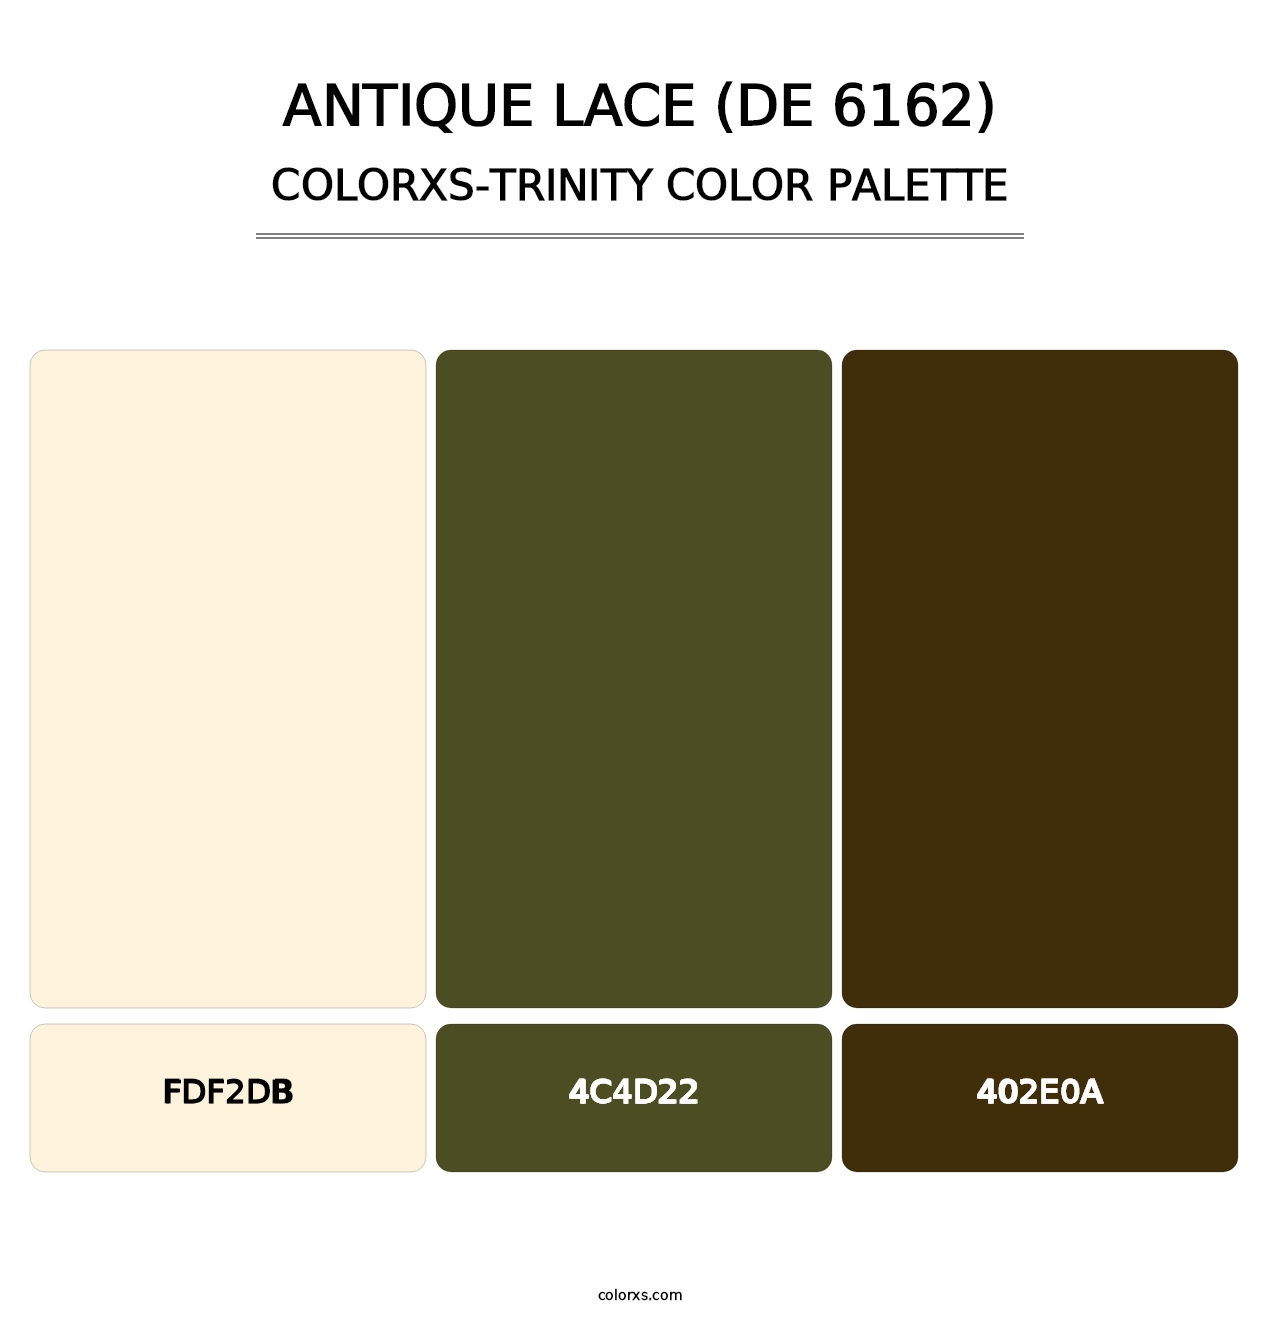 Antique Lace (DE 6162) - Colorxs Trinity Palette